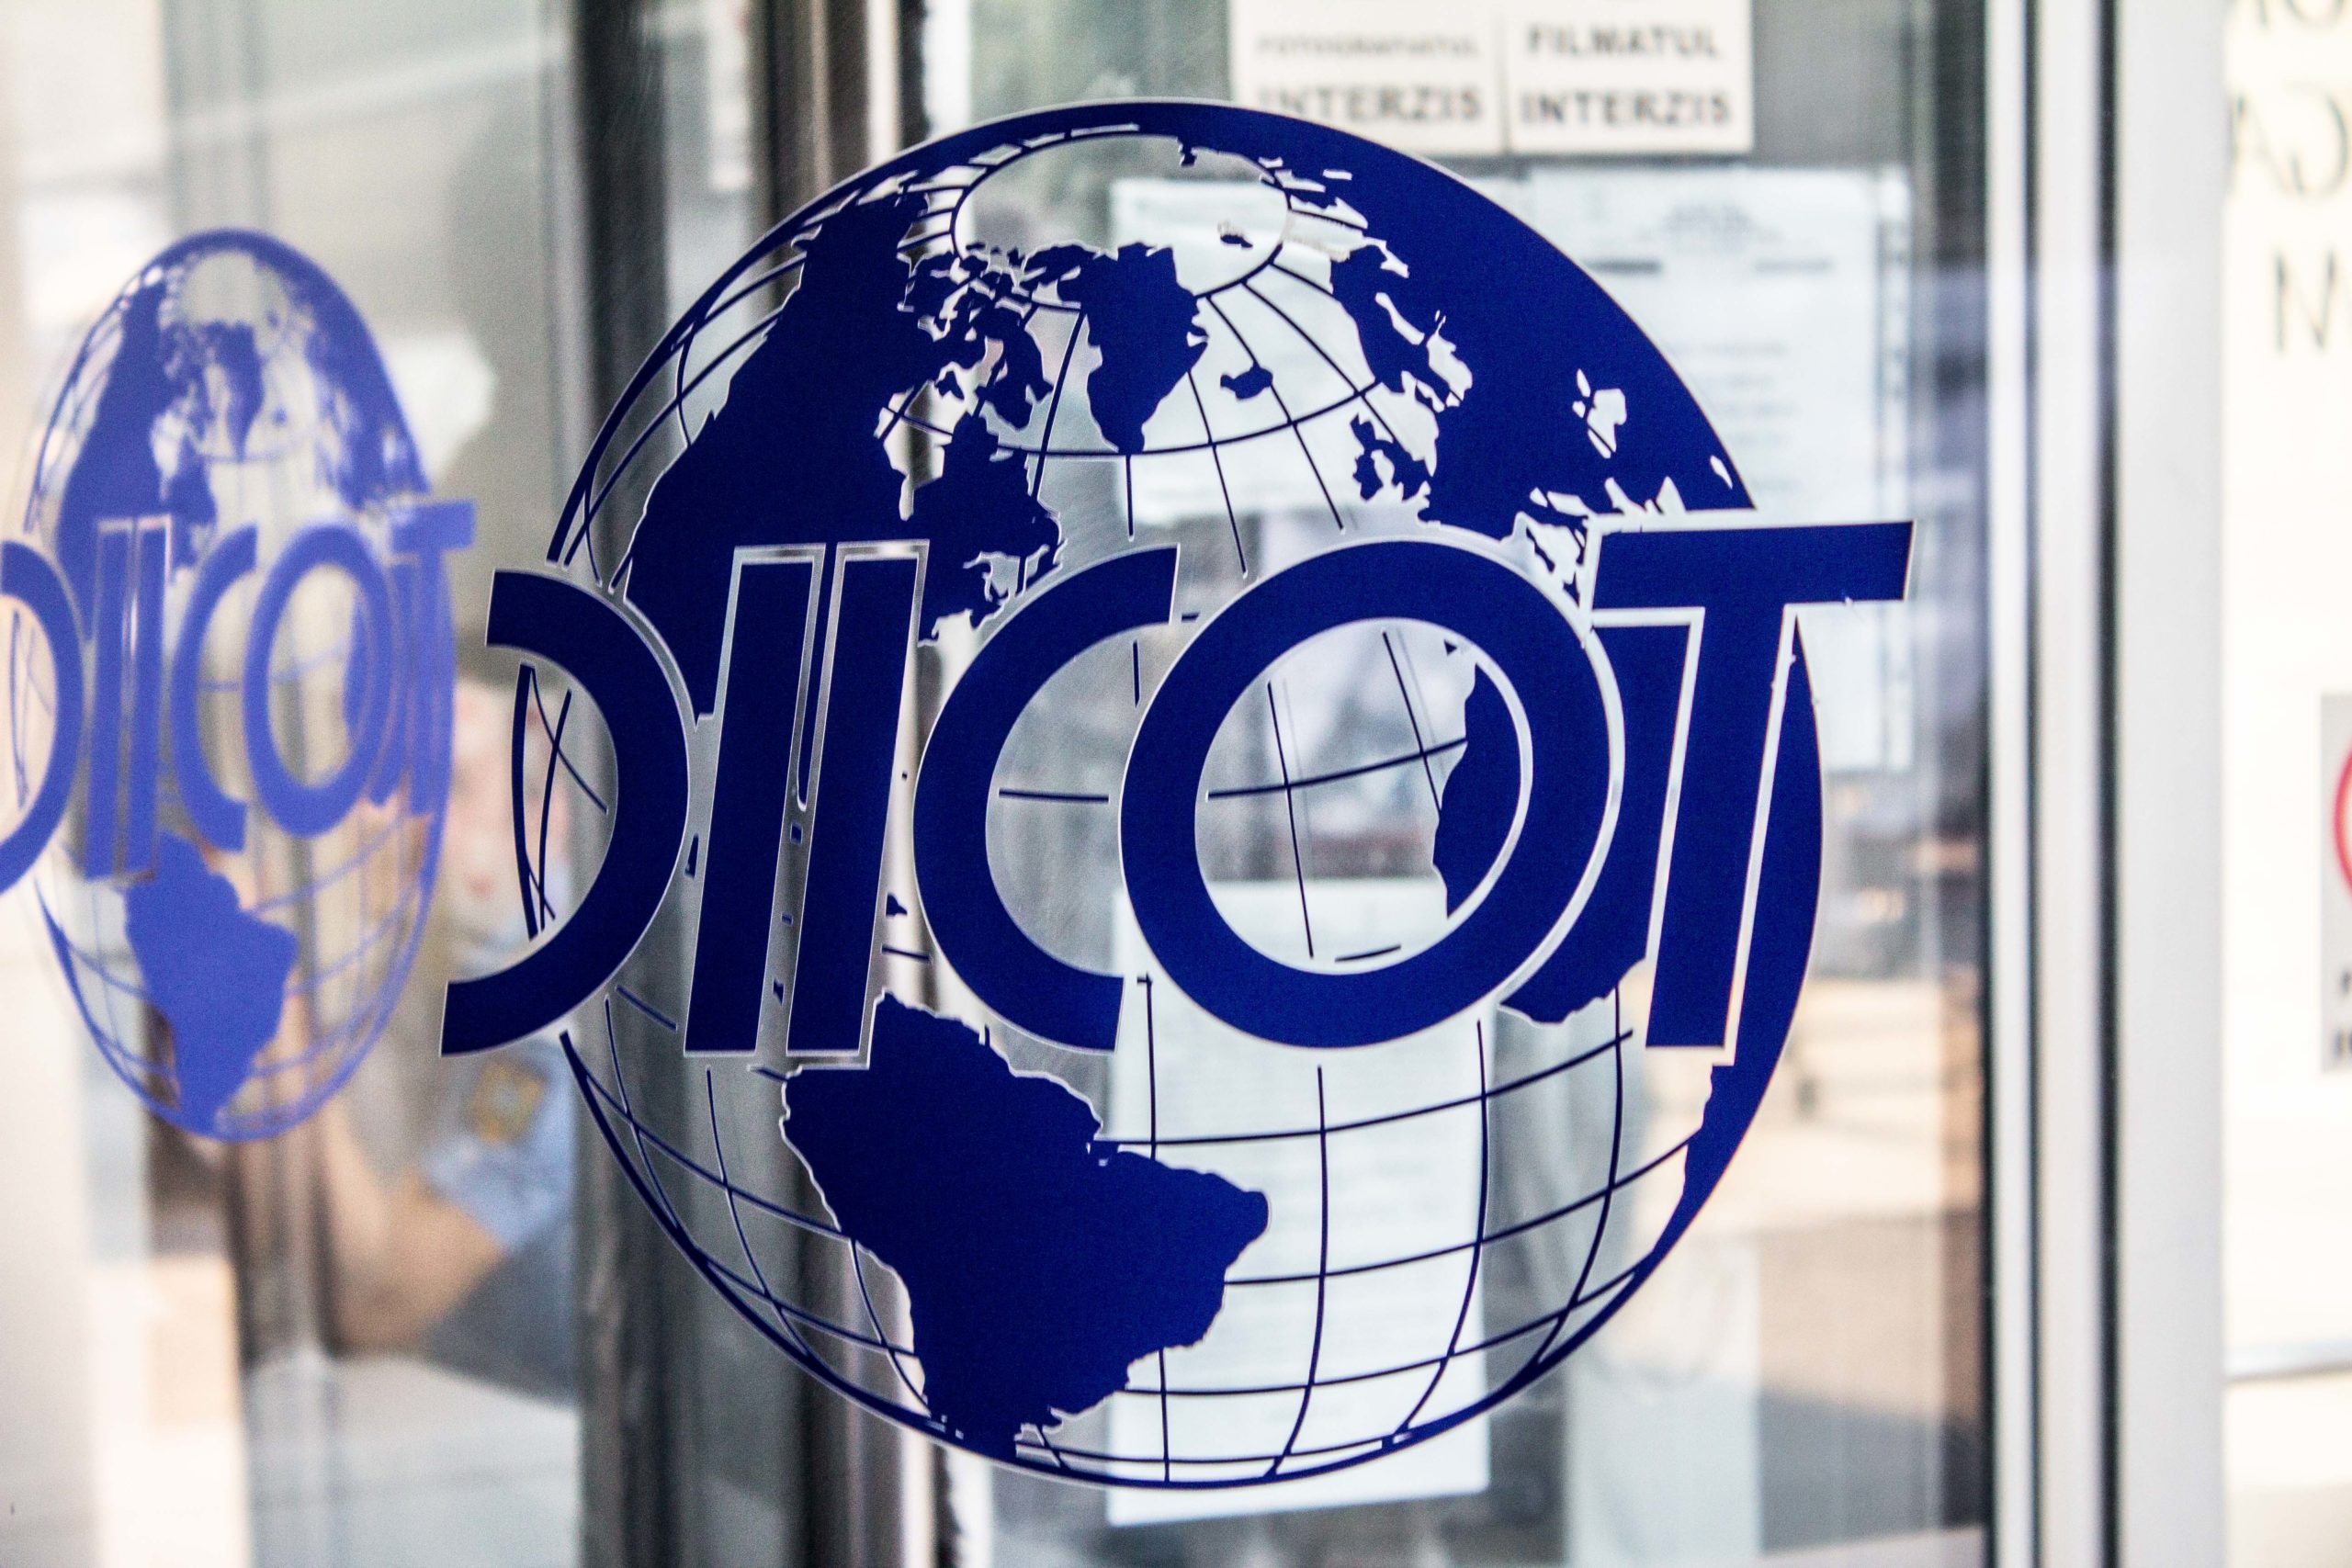 Percheziții la firma controlată de Gazprom: DIICOT confirmă scurgerea de informații secrete despre resursele României